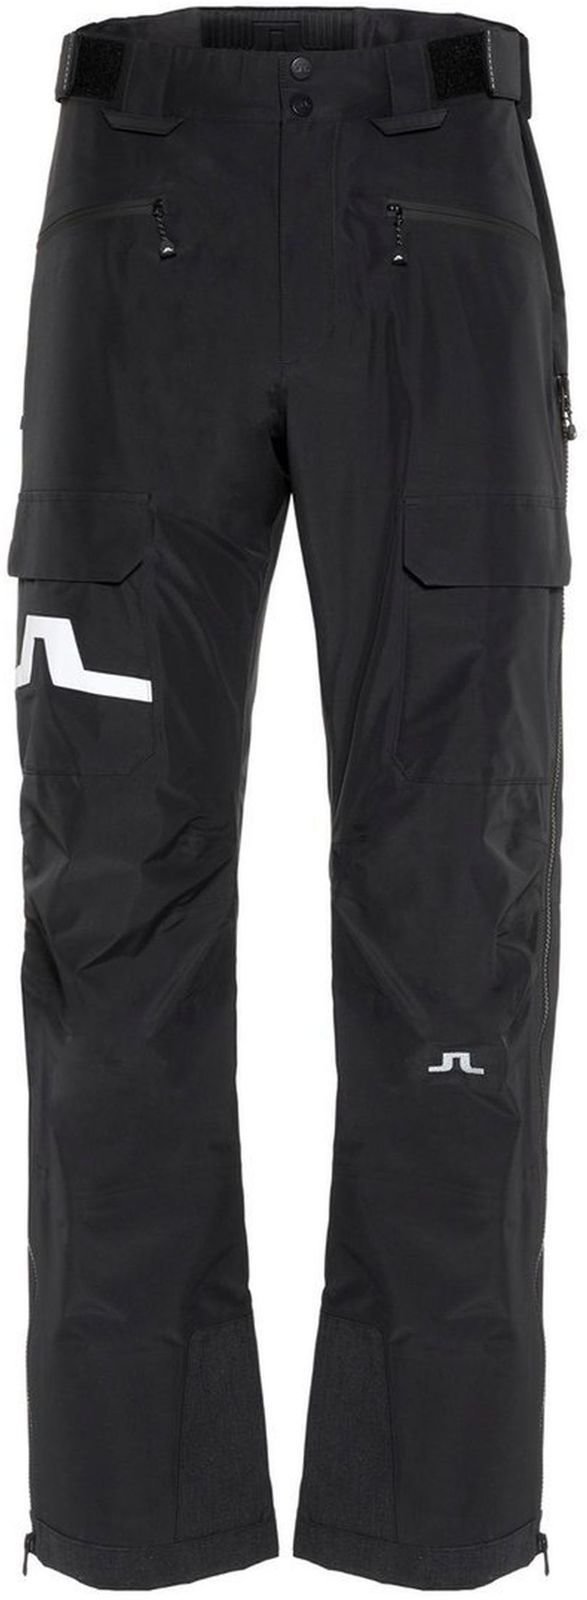 Pantalons de ski J.Lindeberg Harper P 3L GoreTex Noir L